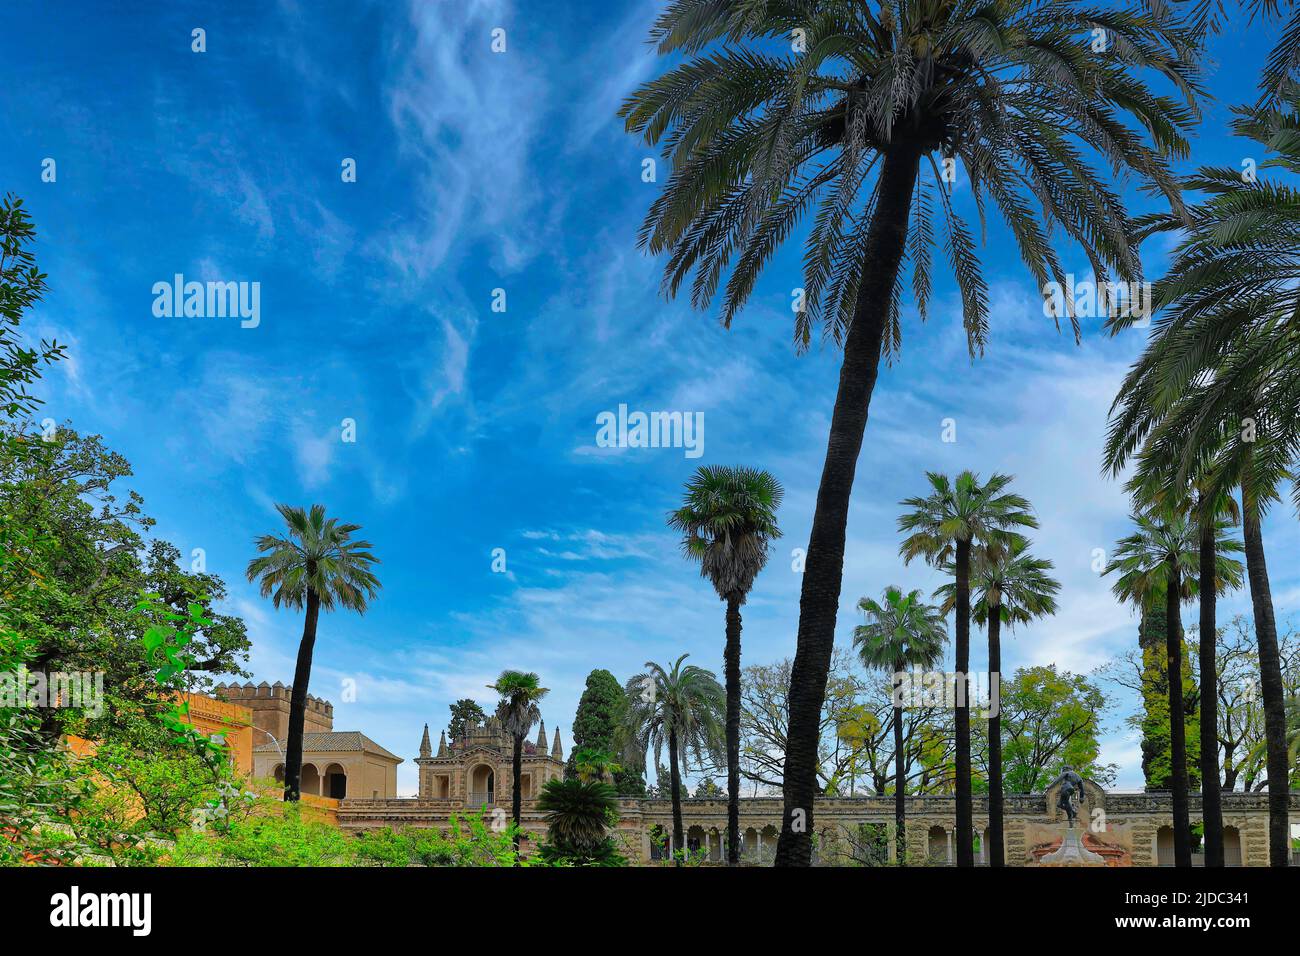 Cielo vivo y palmeras con Portal del Privilegio en el fondo en los jardines del Palacio Real del Alcázar, Sevilla, España Foto de stock